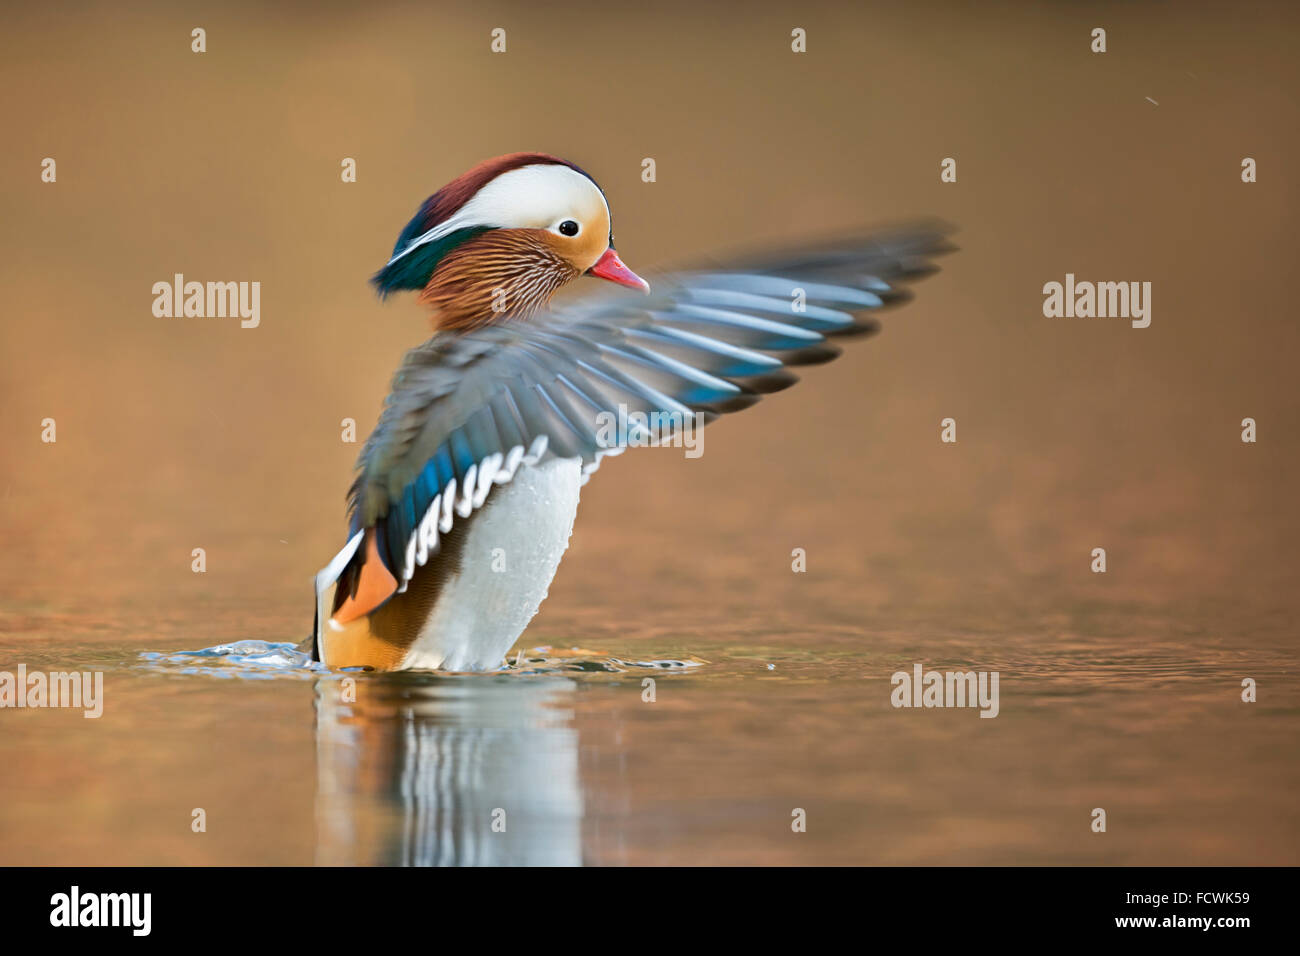 Mandarin Duck / Mandarinente ( Aix galericulata ) beating its wings, looks like a conductor. Stock Photo